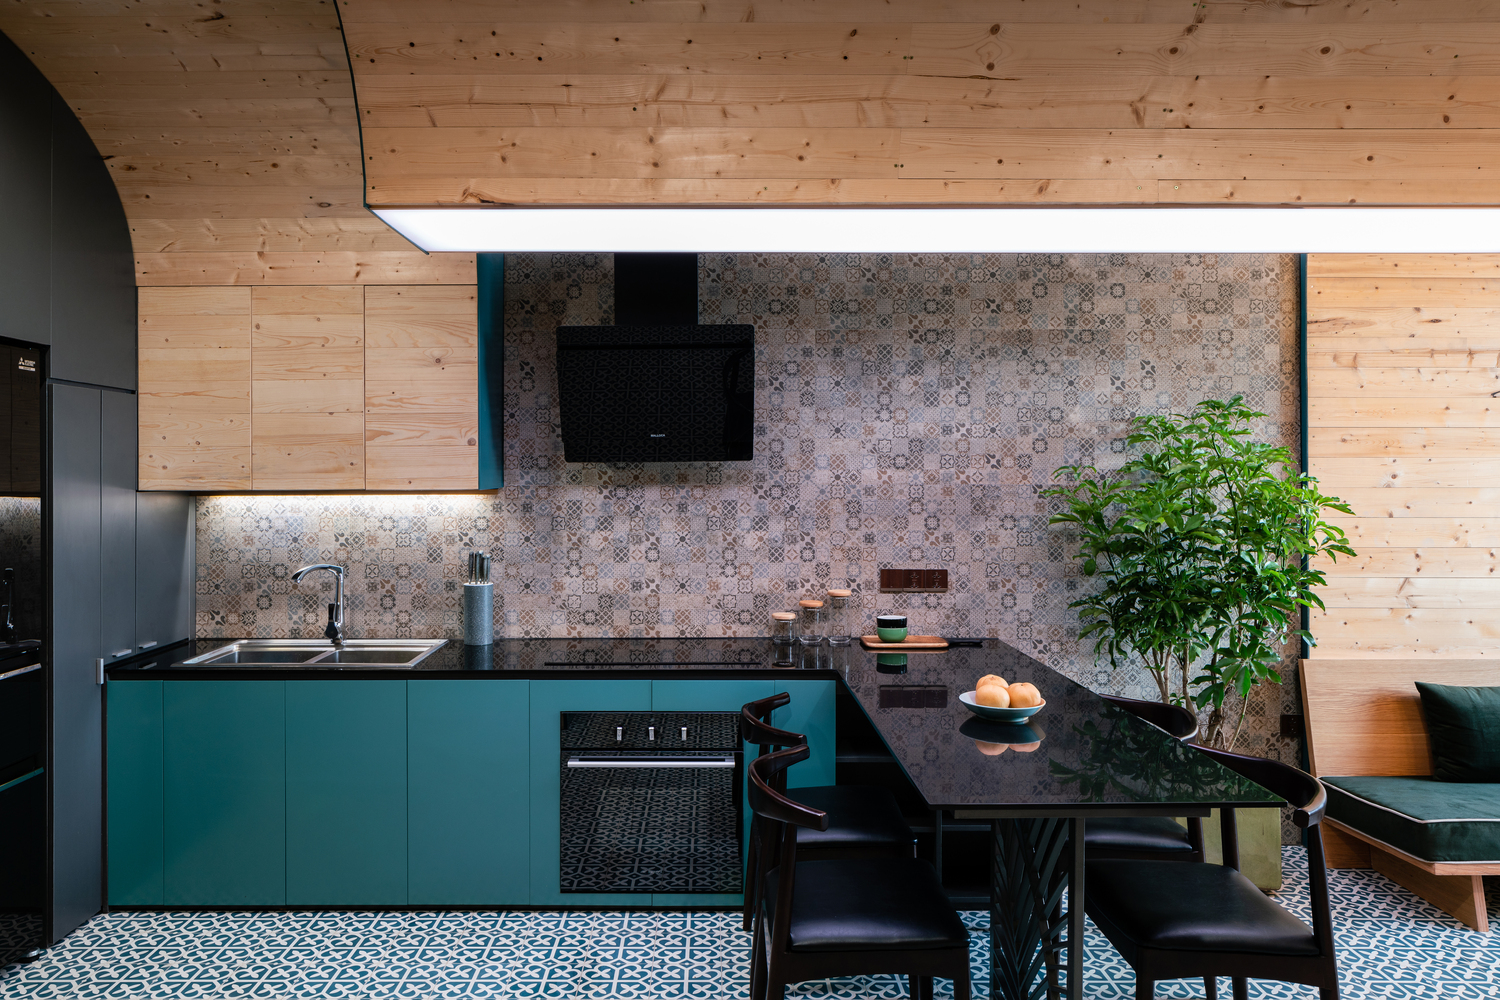 hình ảnh phòng bếp ăn tiện nghi với tủ bếp sơn màu xanh dương, trần vòm ốp gỗ, bàn ăn màu đen ngay cạnh